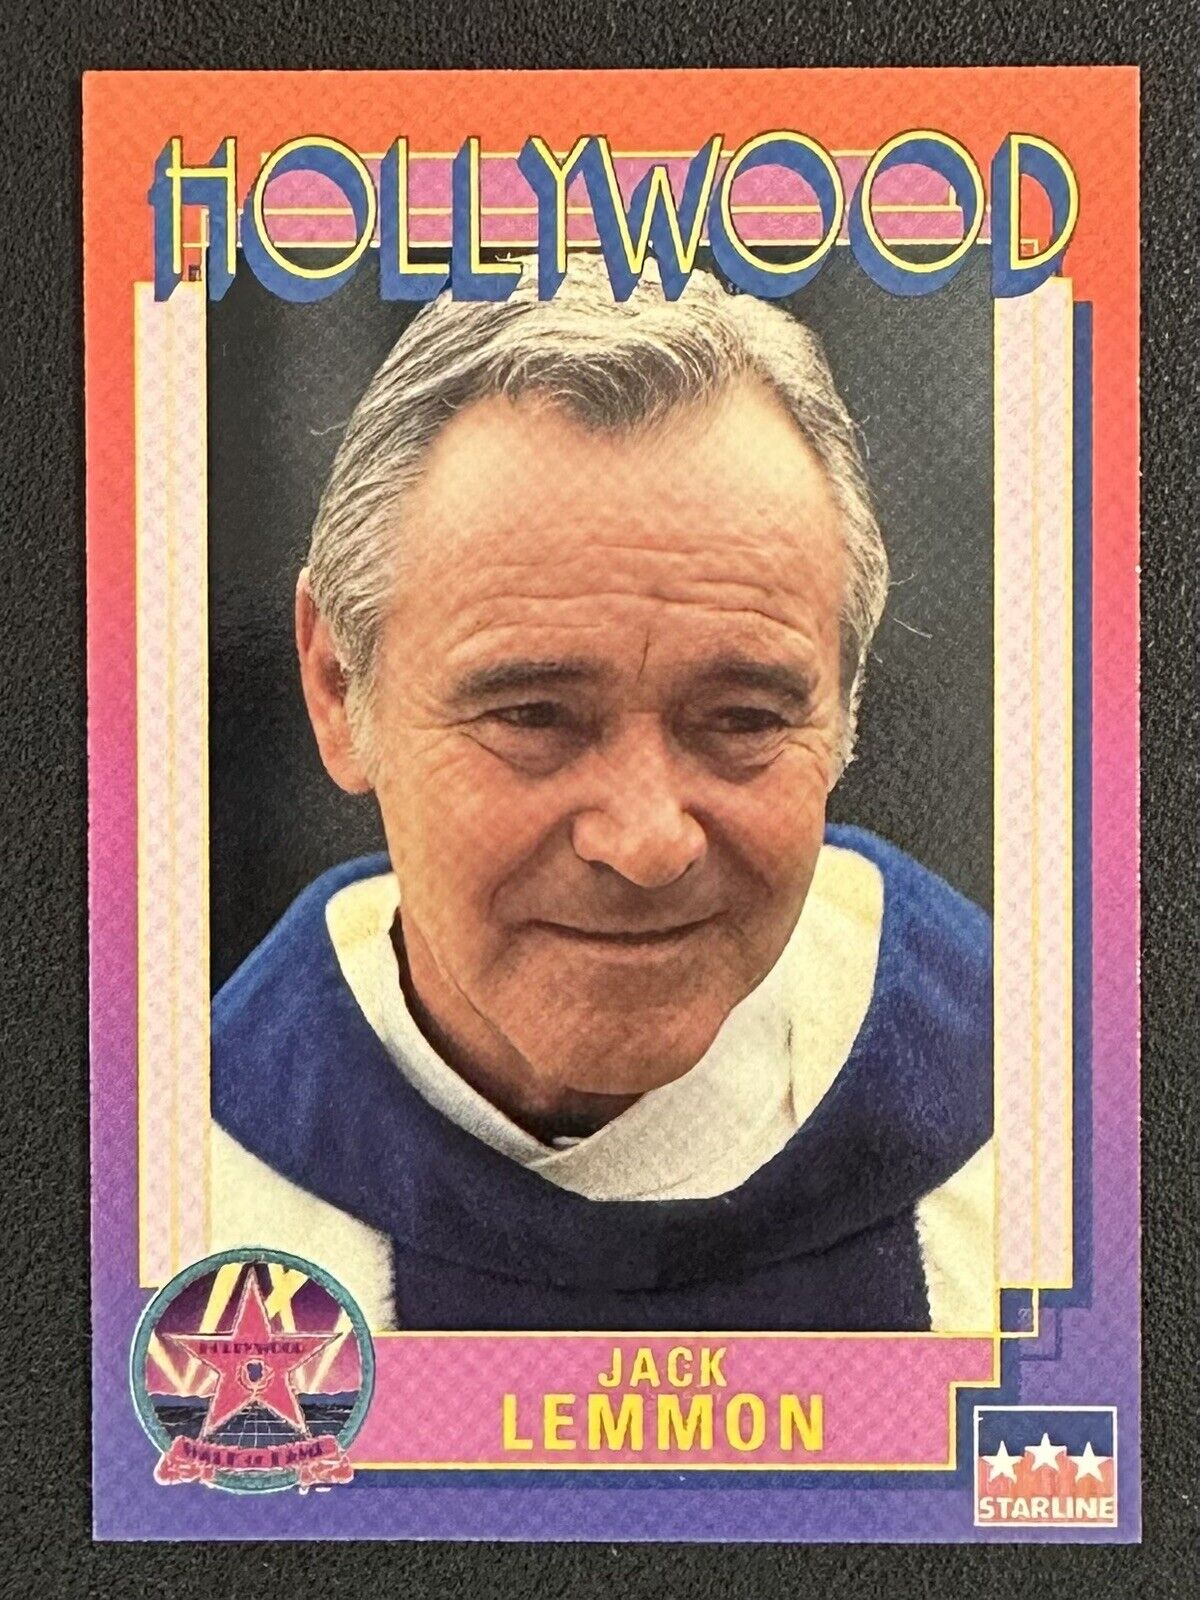 1991 Starline JACK LEMMON #2 Hollywood Walk of Fame card in Toploader